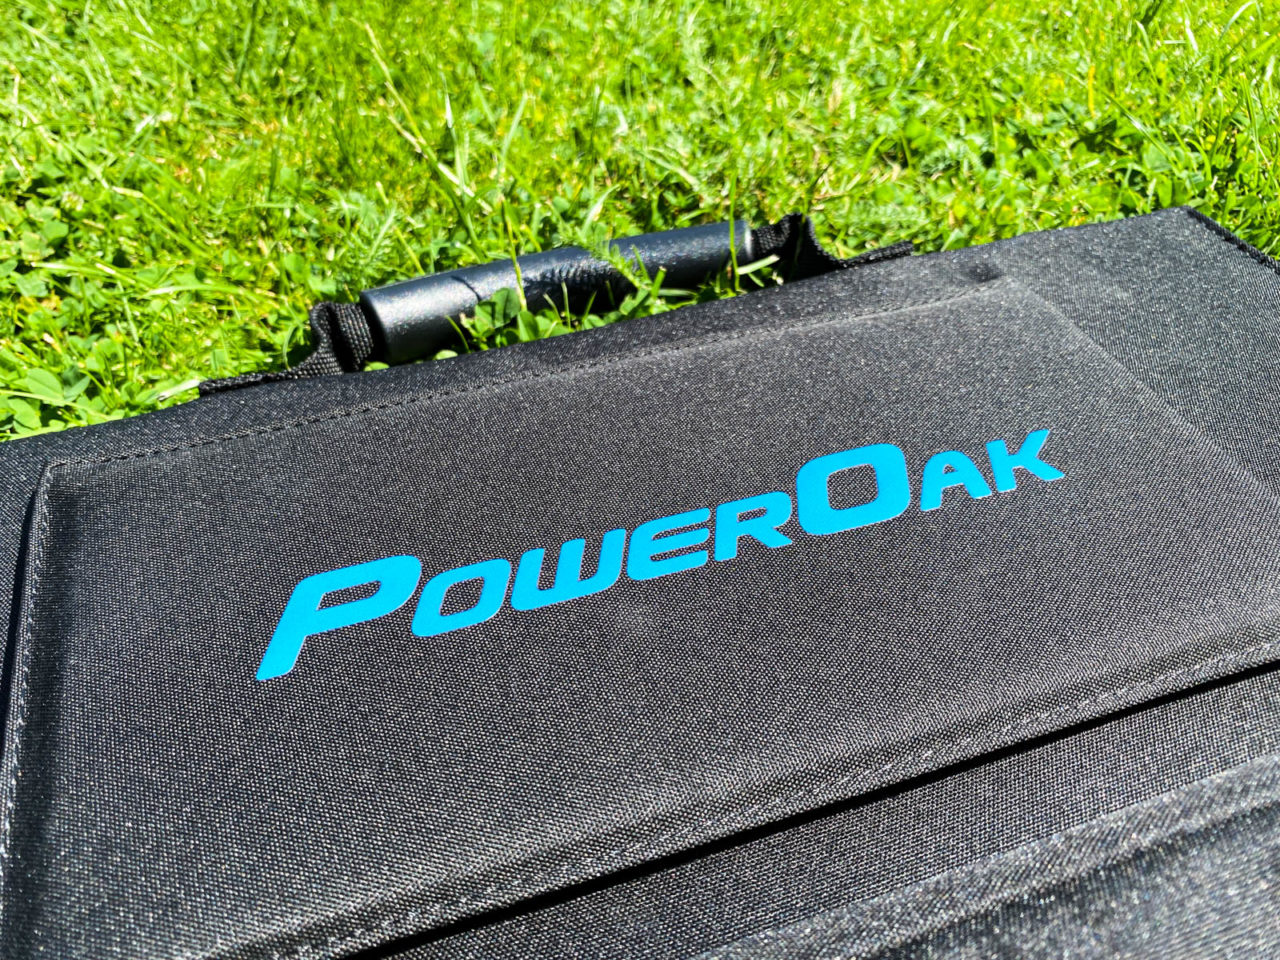 PowerOak Bluetti SP120 Solarpanel Test - Nahaufnahme der Solartasche im Gras, PowerOak Logo